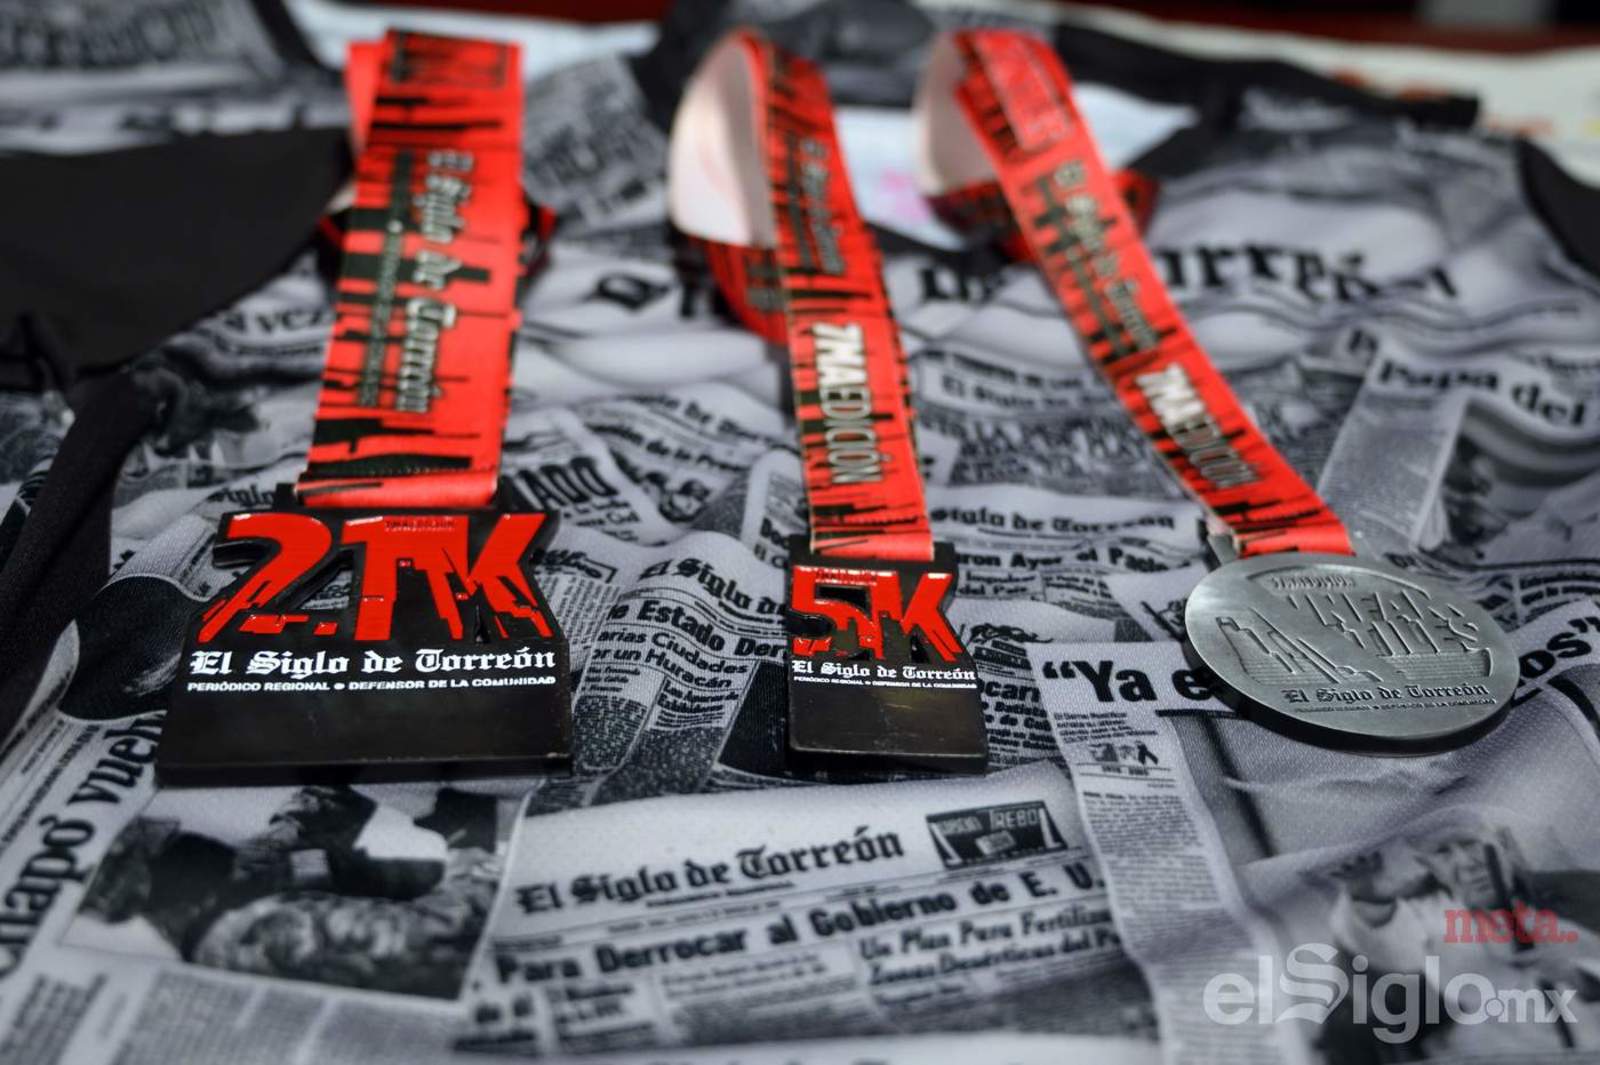 El kit para cada uno de los participantes en la carrera de El Siglo de Torreón incluye medalla conmemorativa.